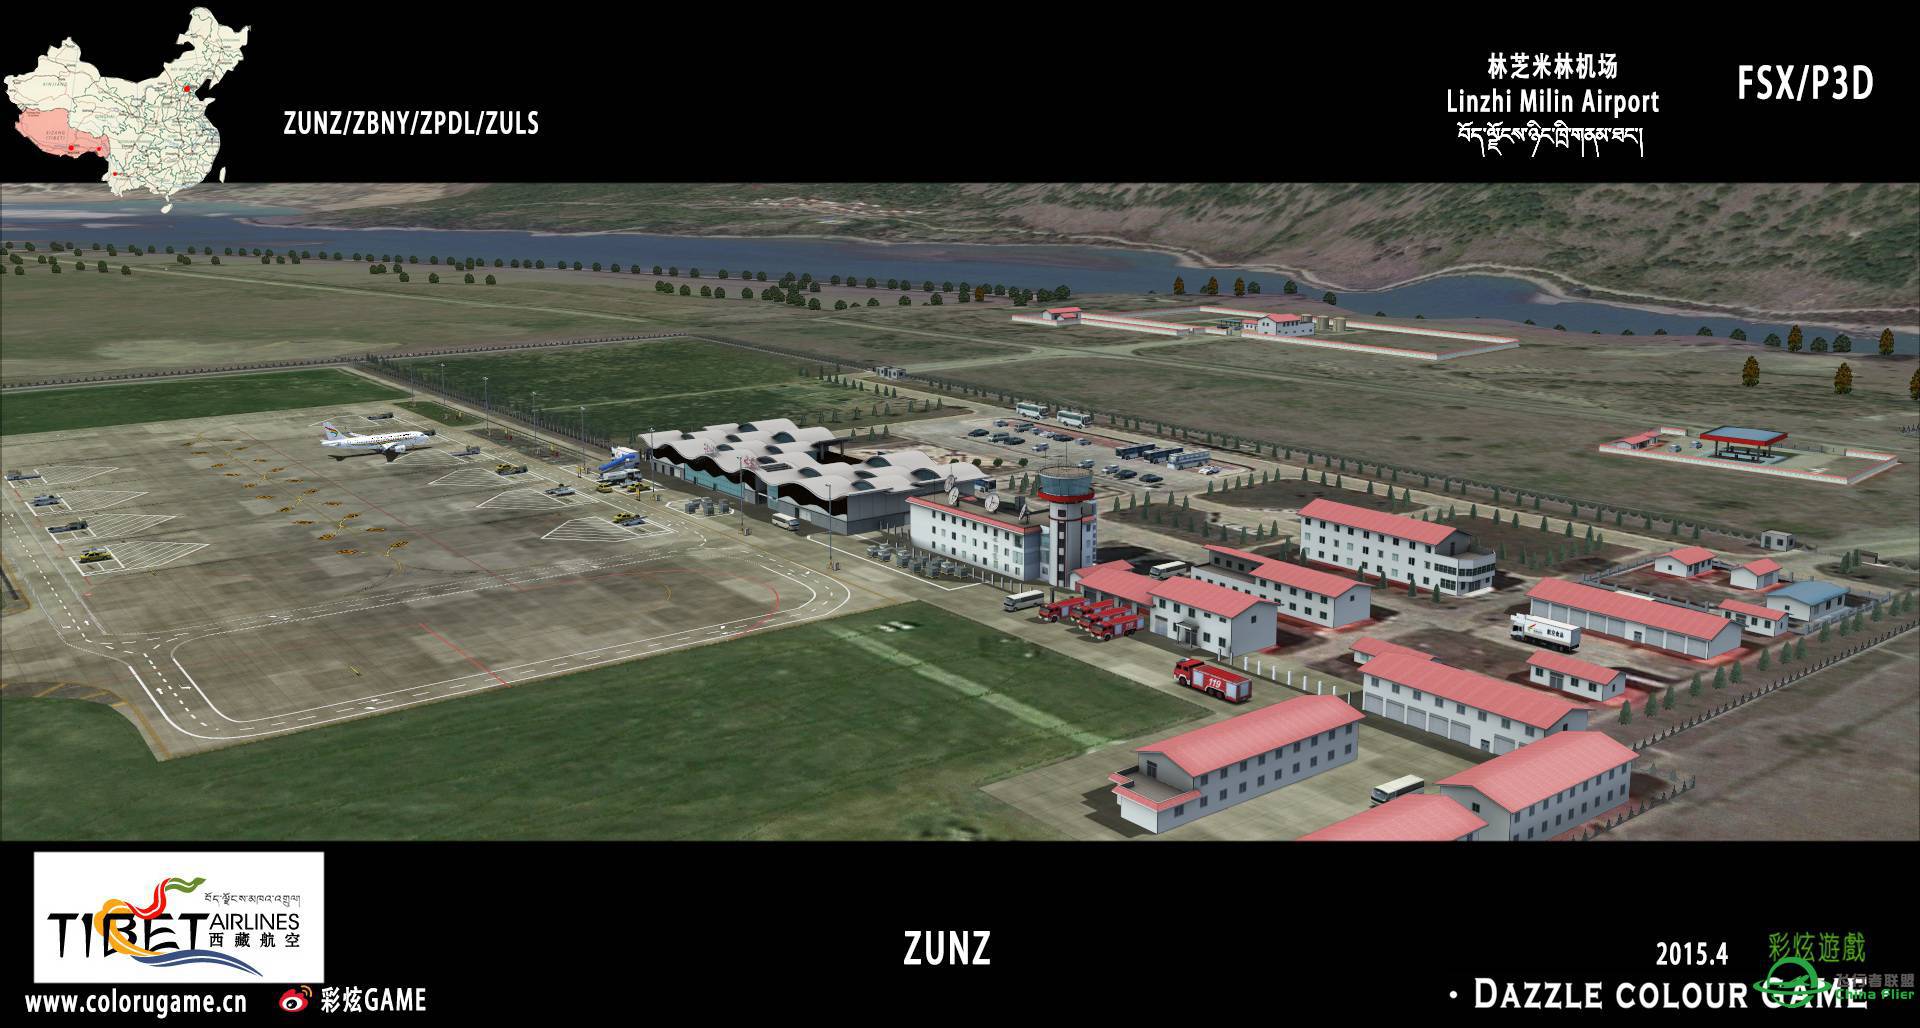 彩炫地景：林芝米林机场（ZUNZ）正式发布！-4521 